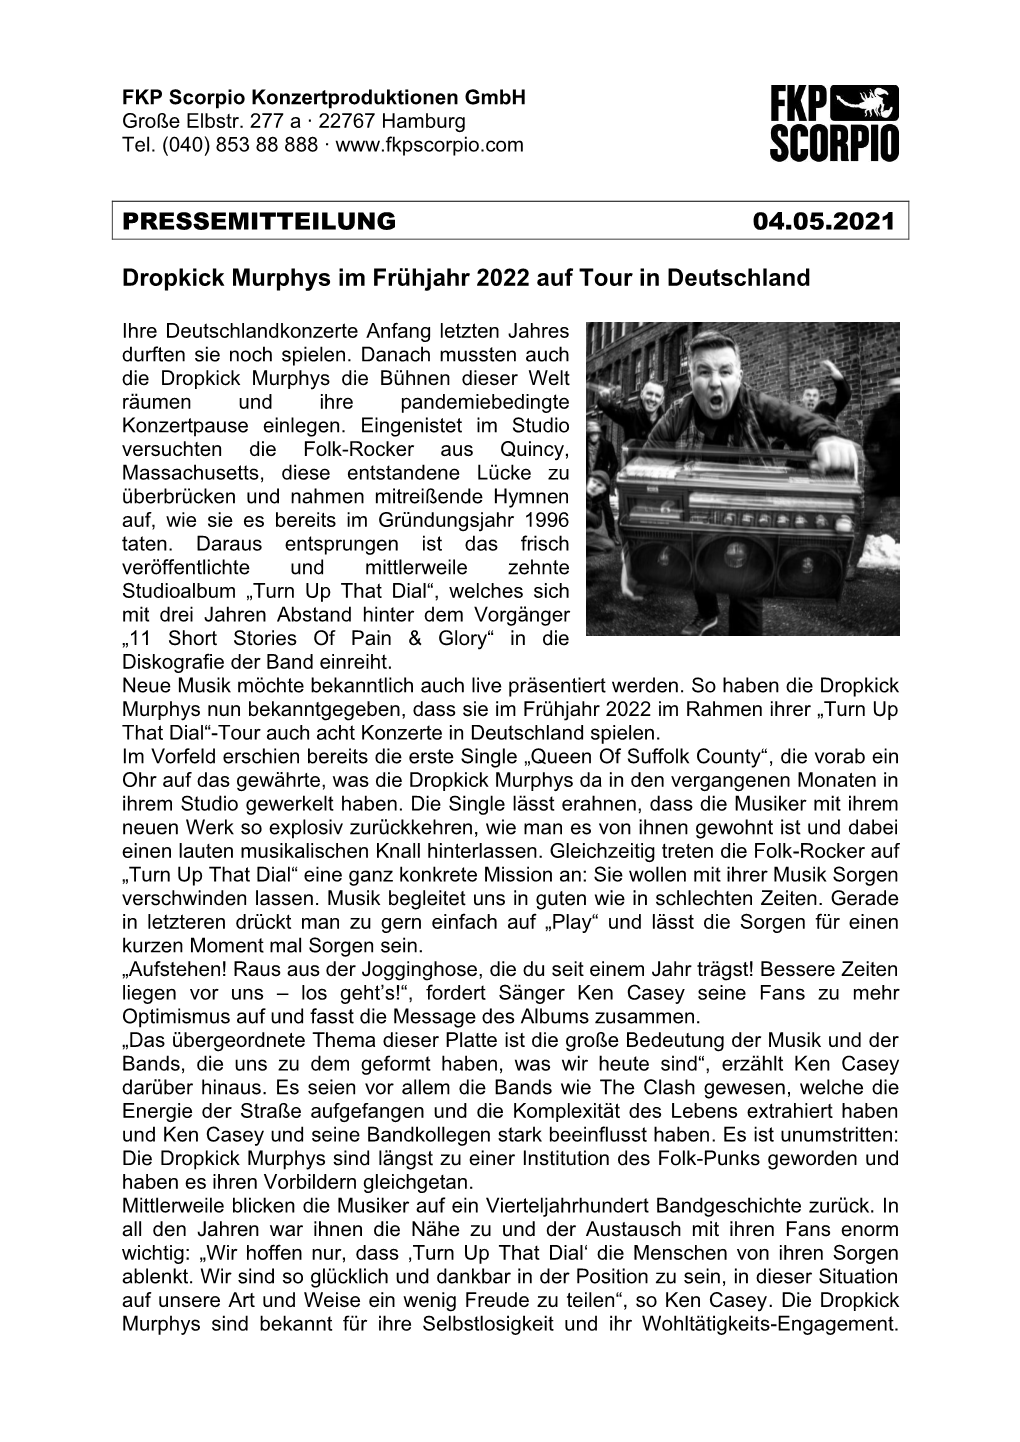 PRESSEMITTEILUNG 04.05.2021 Dropkick Murphys Im Frühjahr 2022 Auf Tour in Deutschland